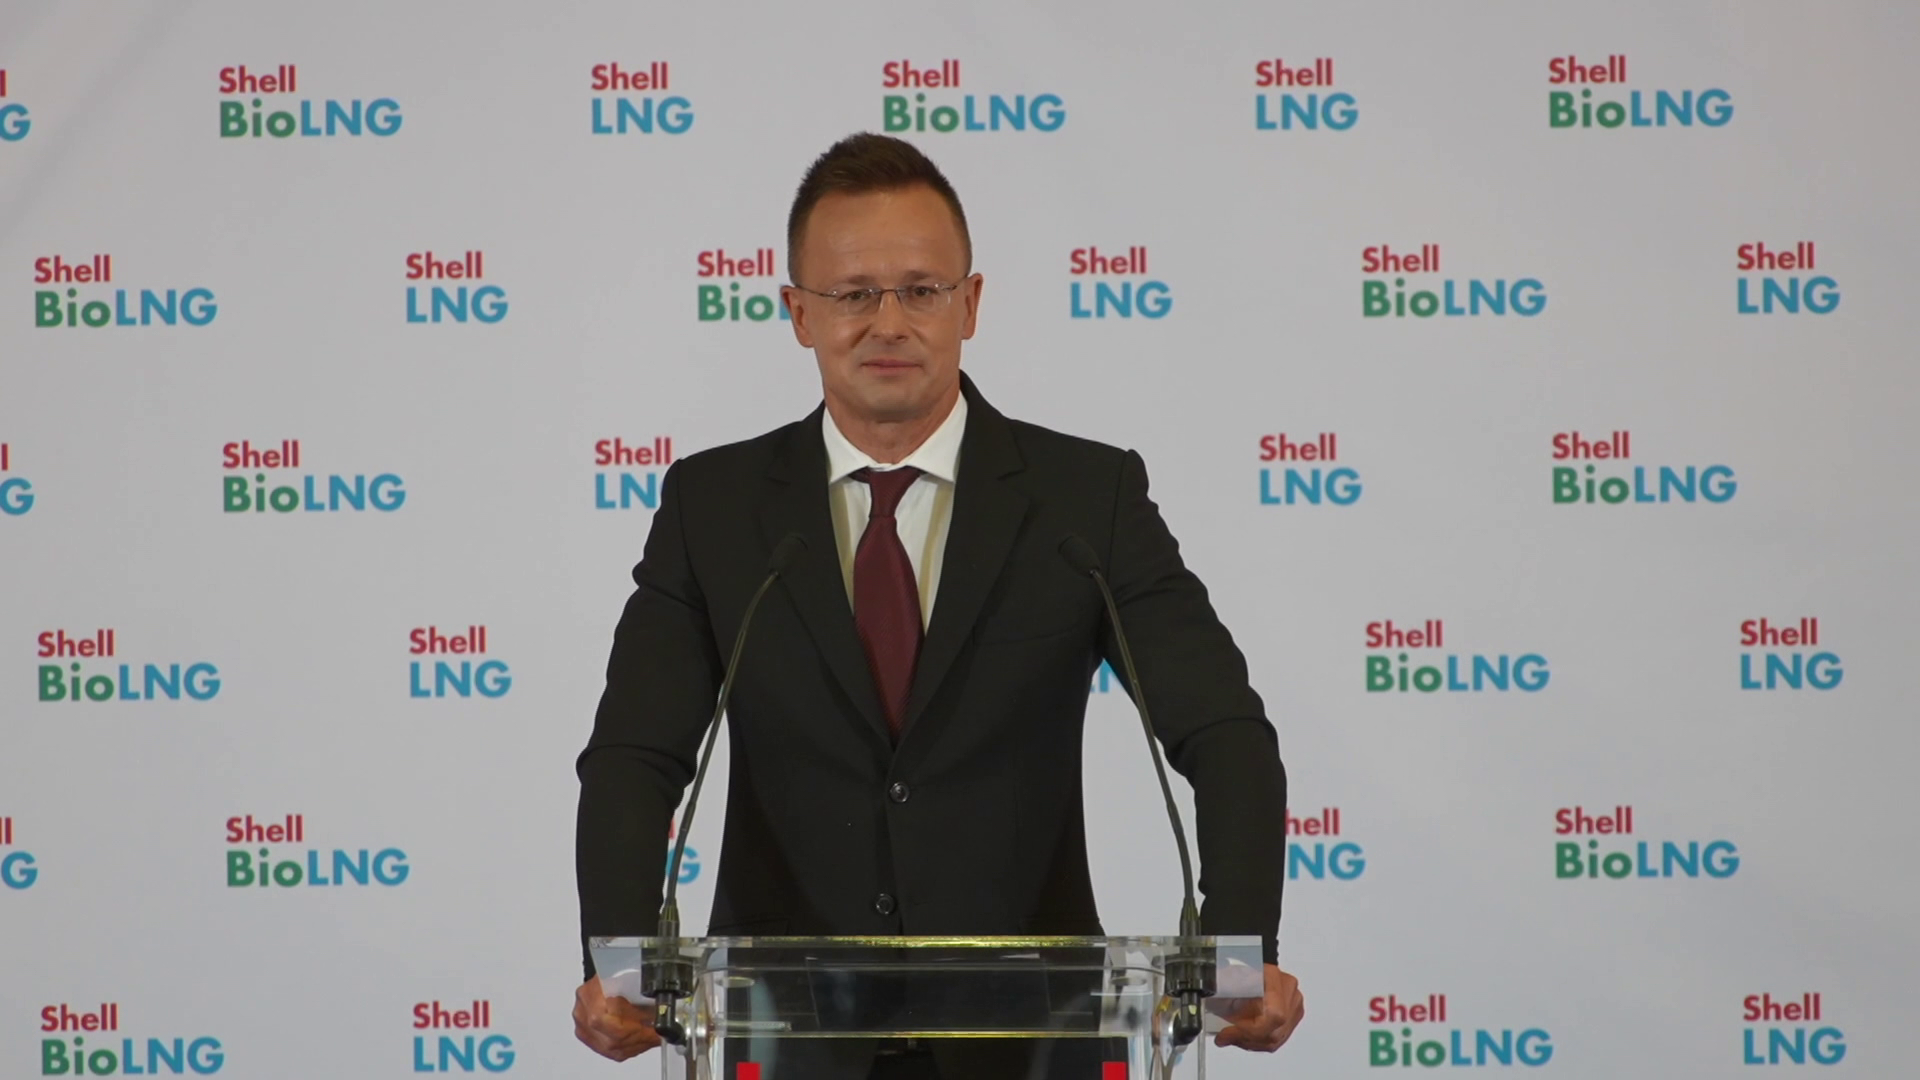 Szijjártó Péter: A régióban elsőként Magyarországon nyitott a Shell LNG-töltőállomást 